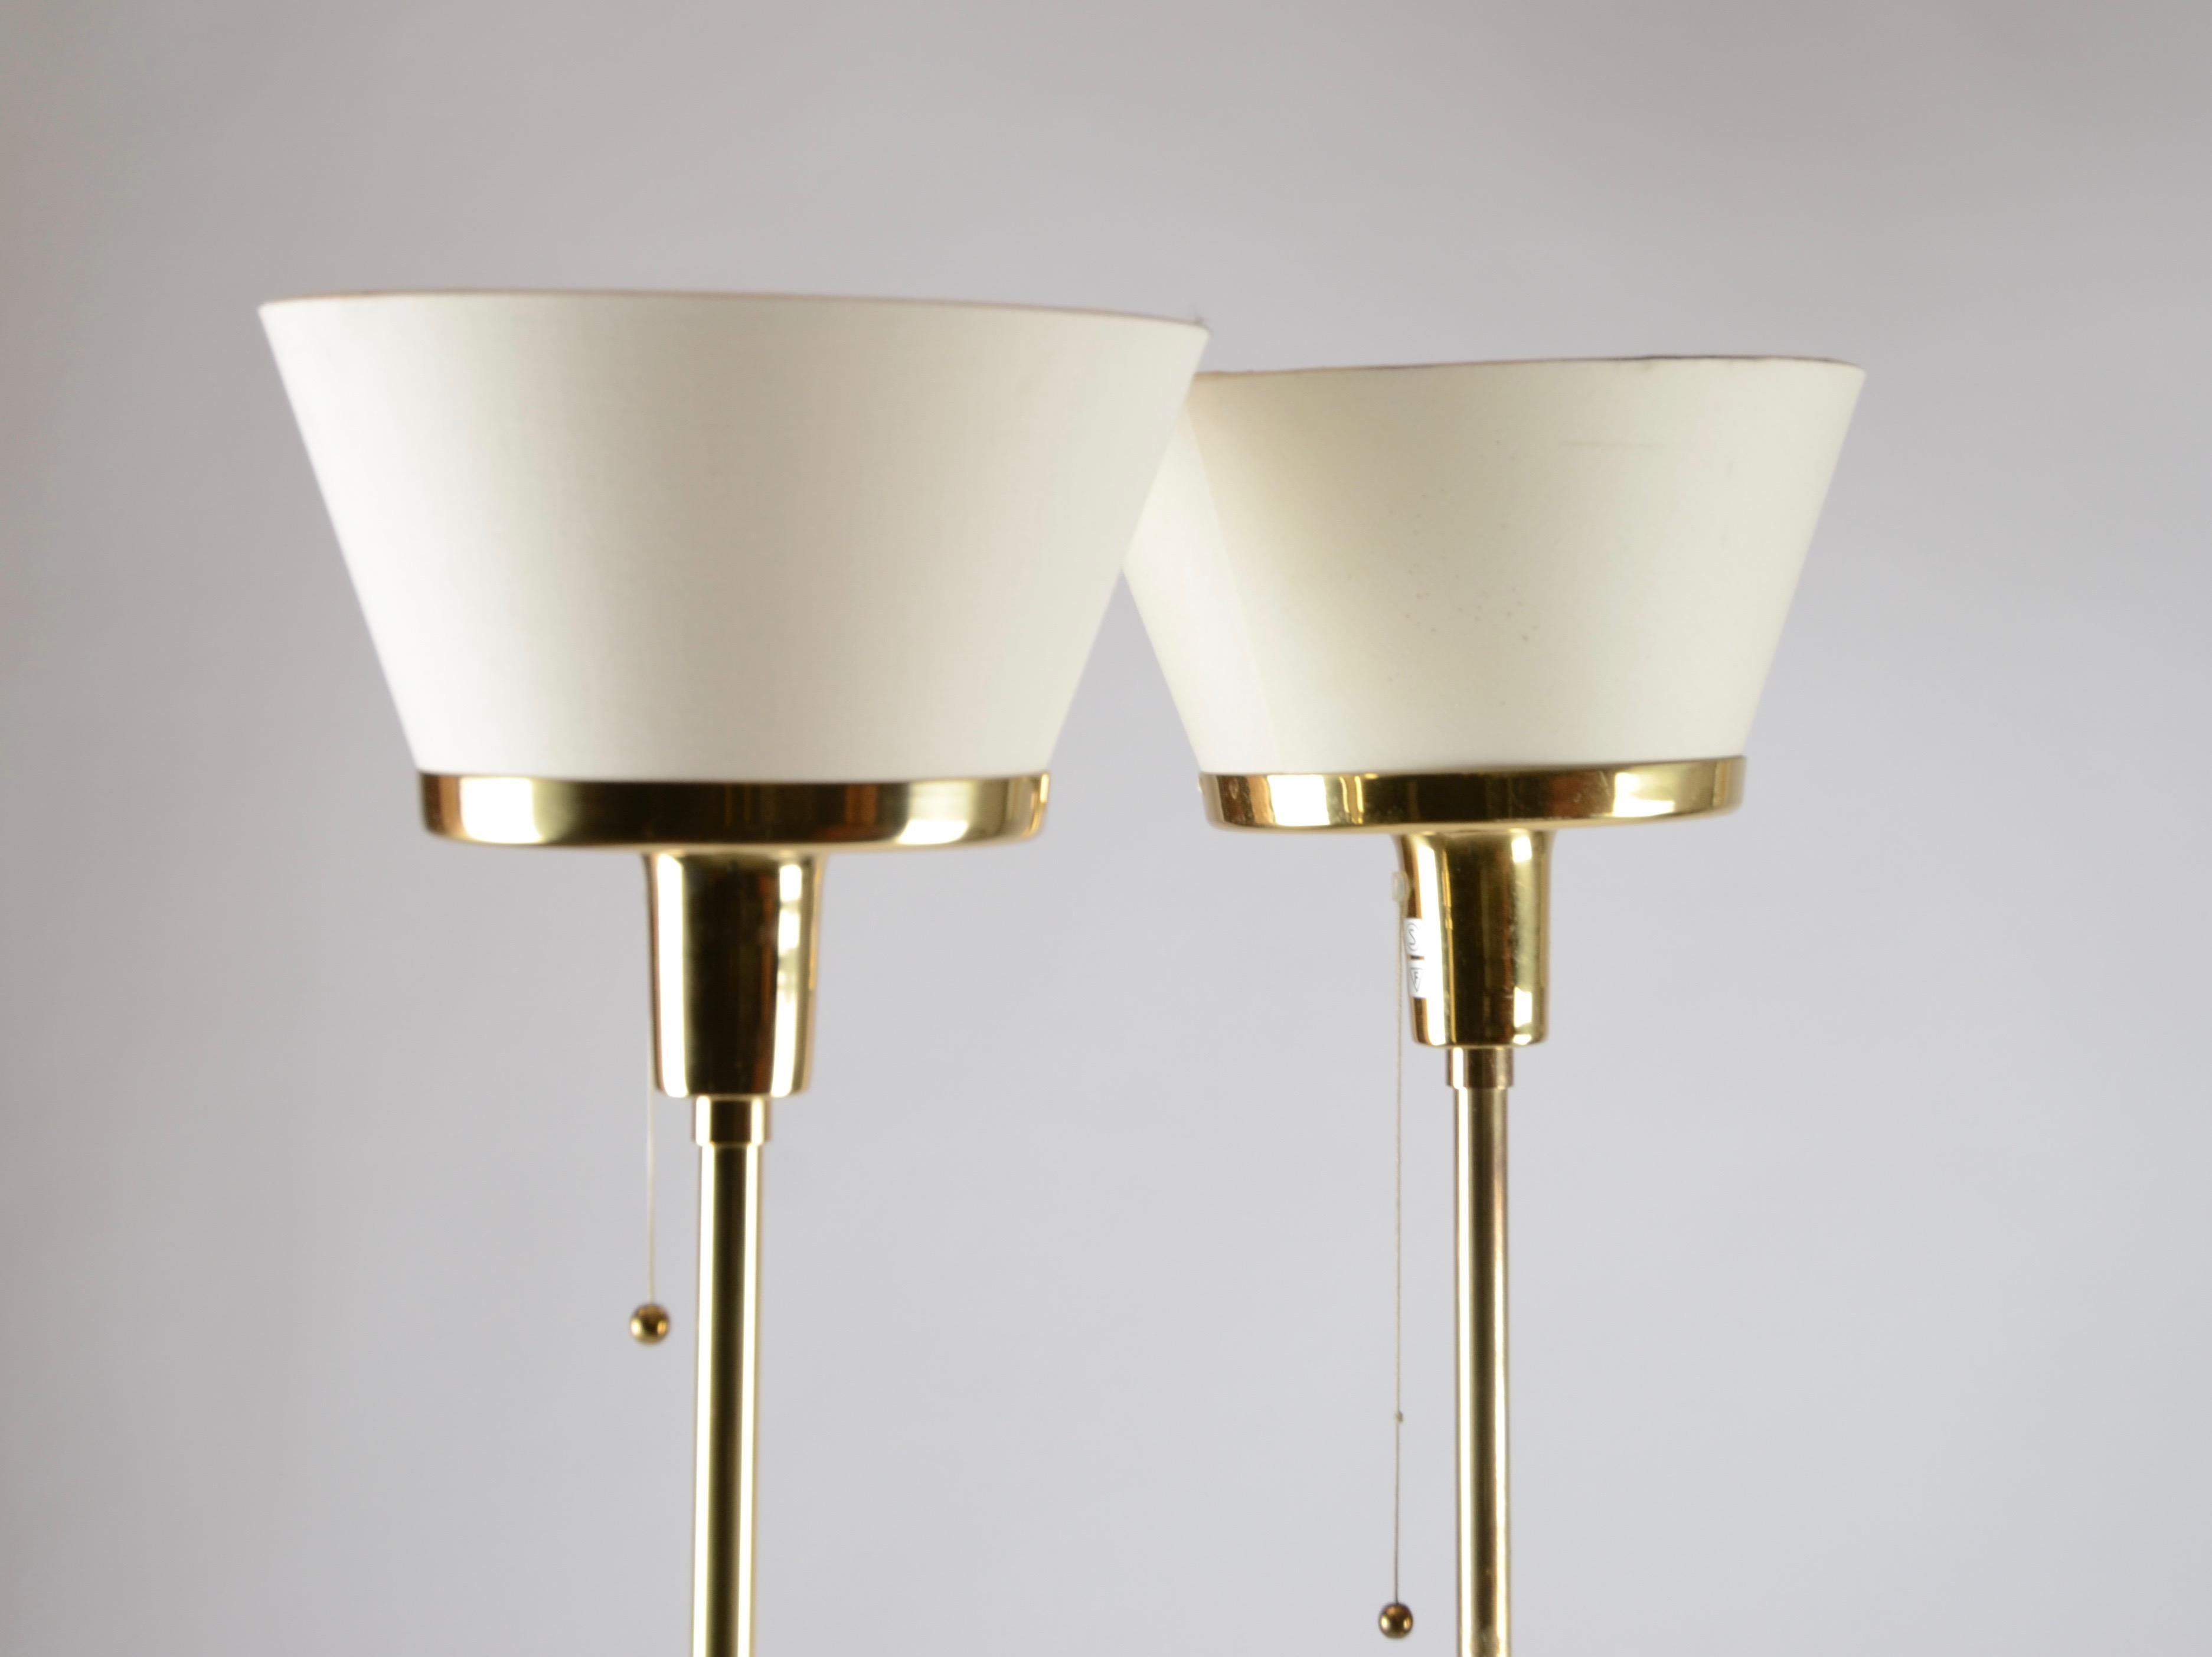 A pair of floor lamps model 2424, designed by Josef Frank in 1939 for Firma Svenskt Tenn.